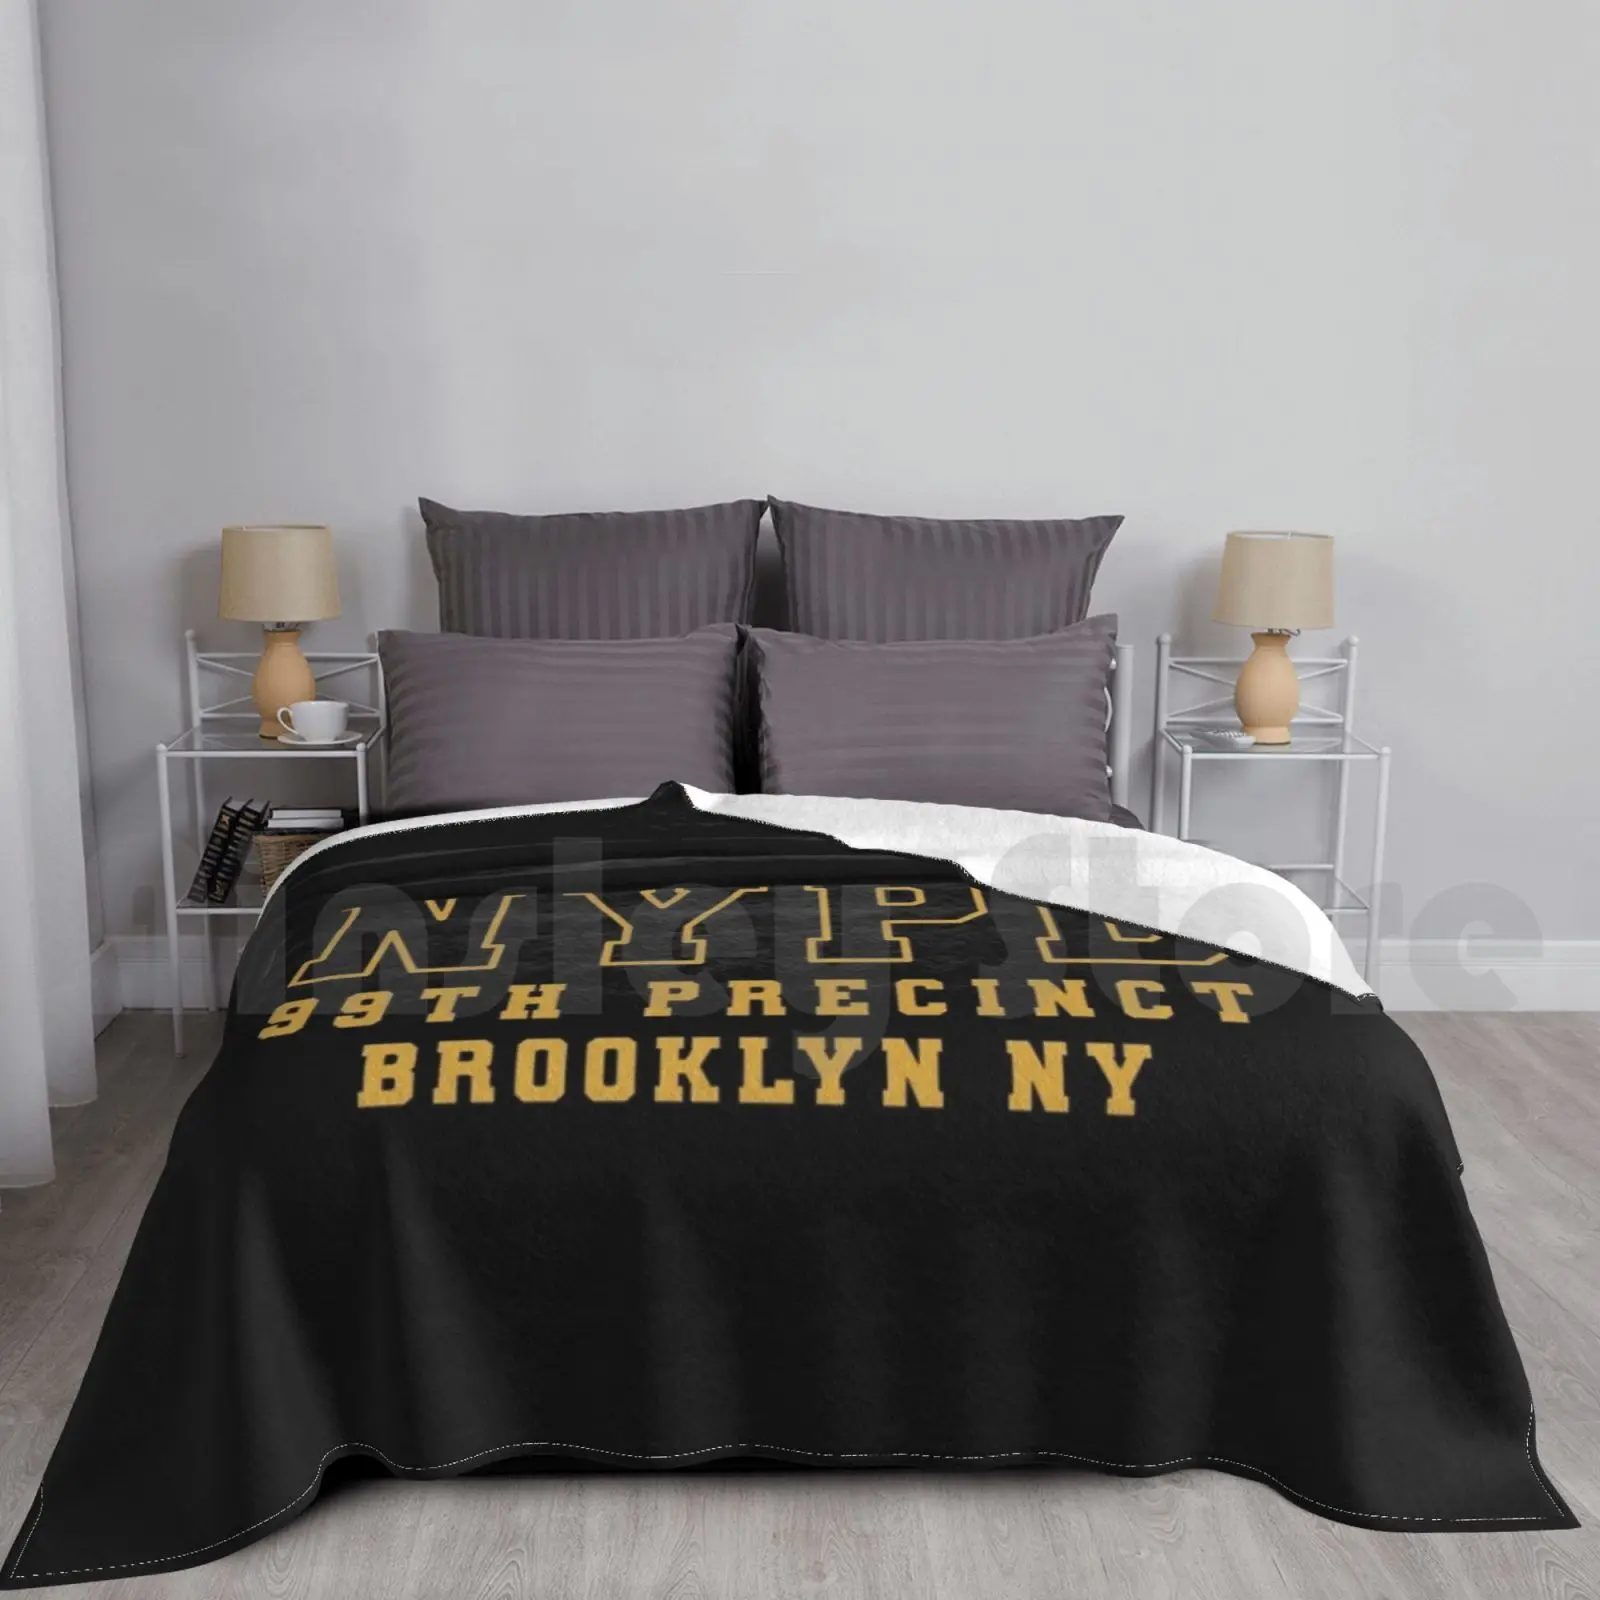 

Модное одеяло 99-го участка полиции Нью-Йорка, полицейский коп-закон 99-го участка девять